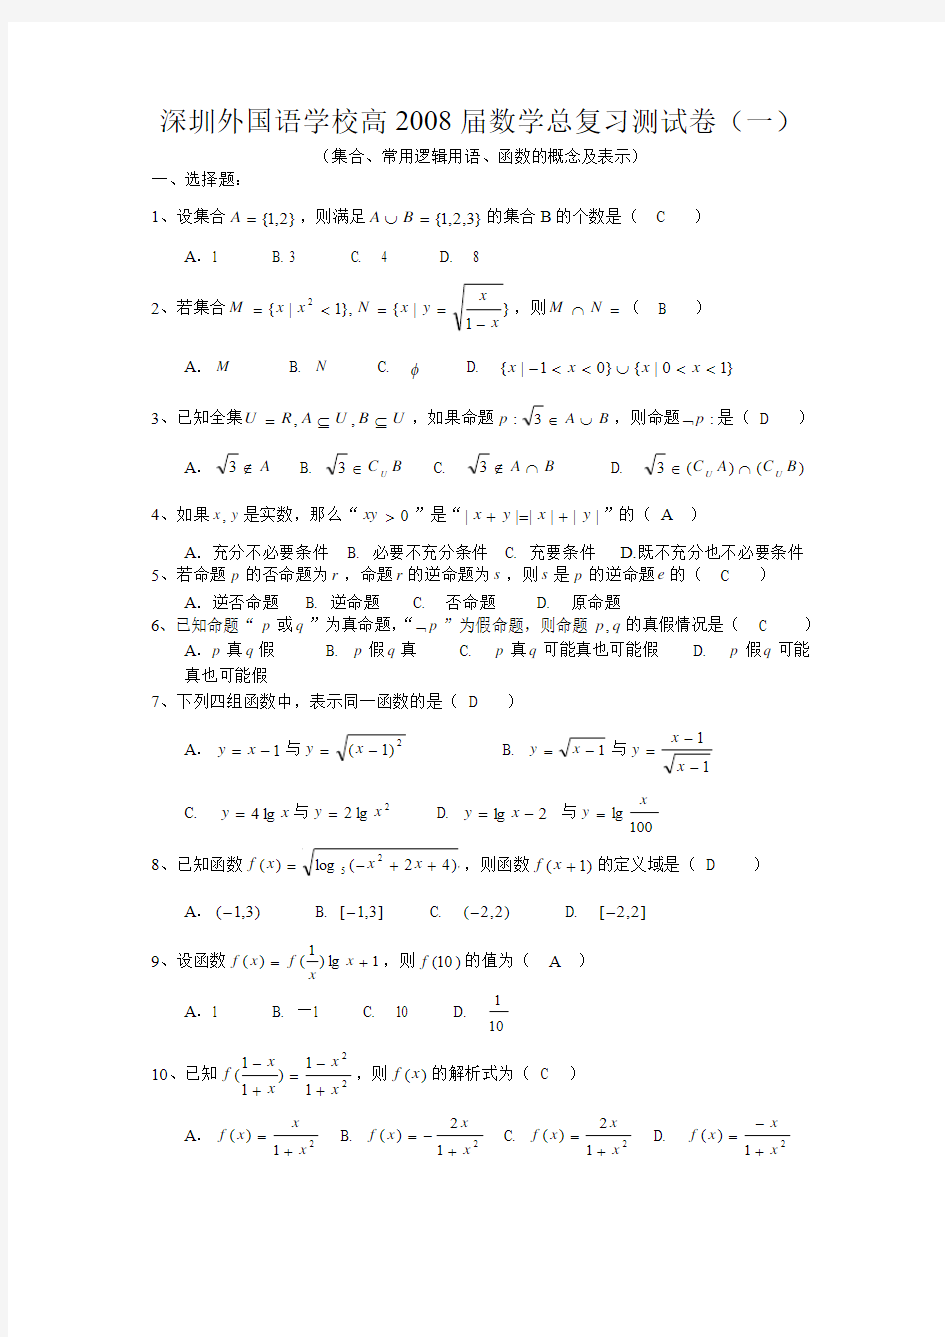 深圳外国语学校高2008届数学总复习测试卷